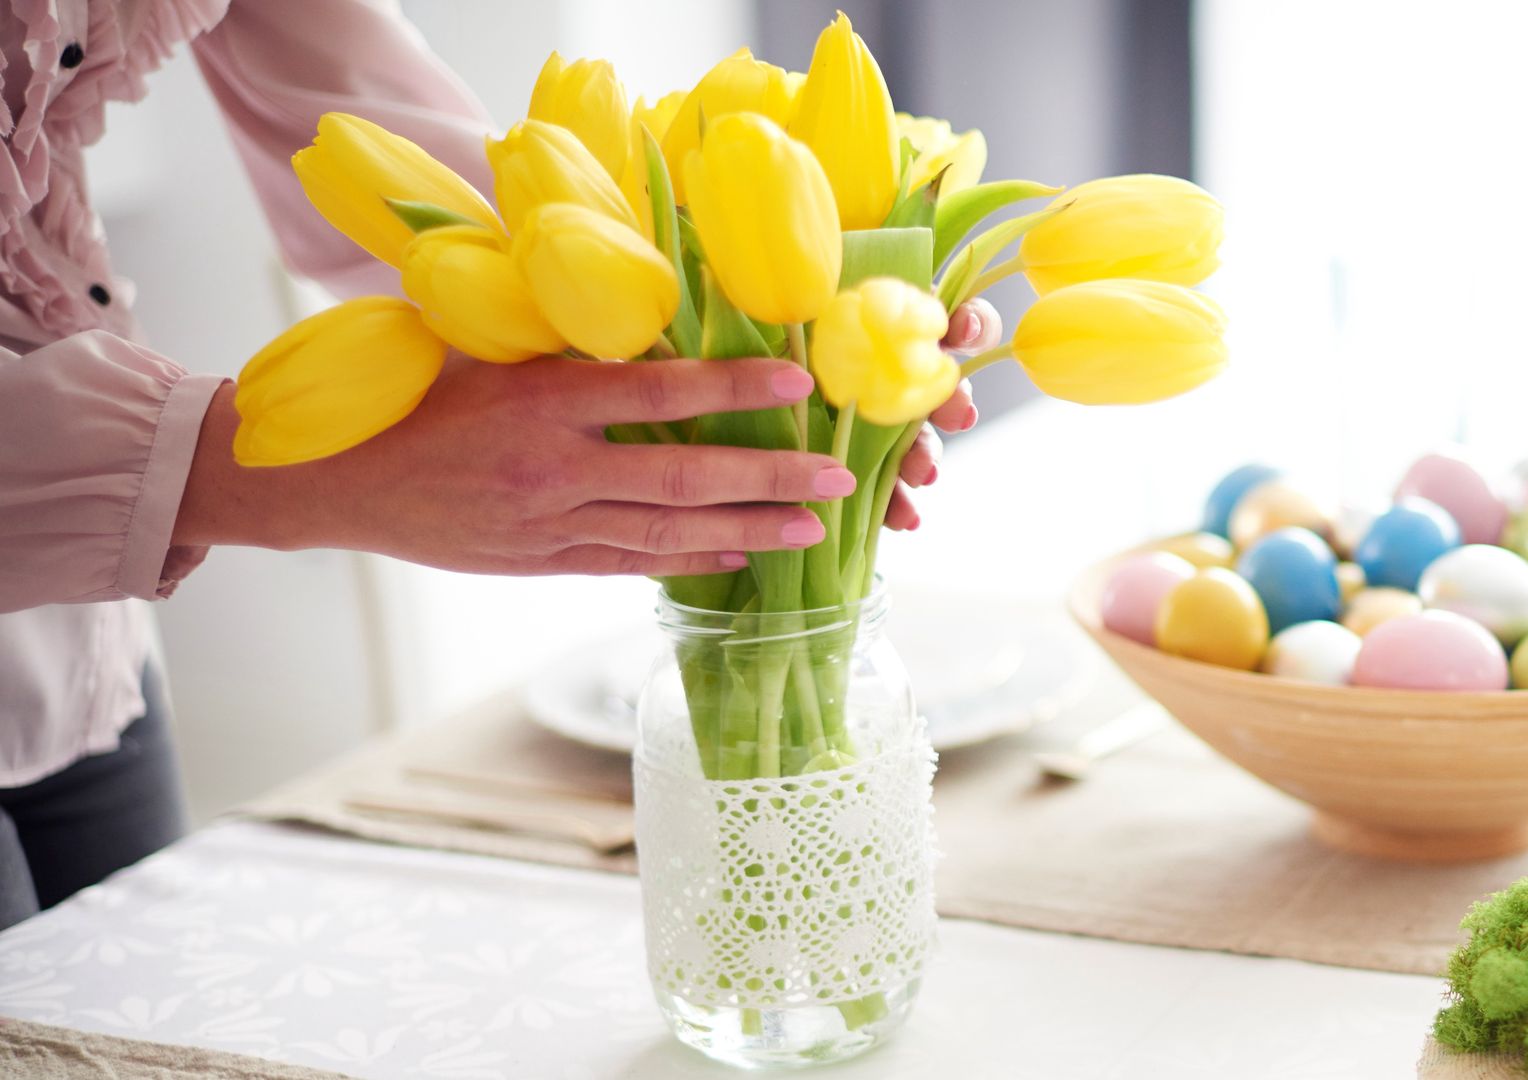 Wrzuć to na dno wazonu. Przedłużysz życie tulipanów